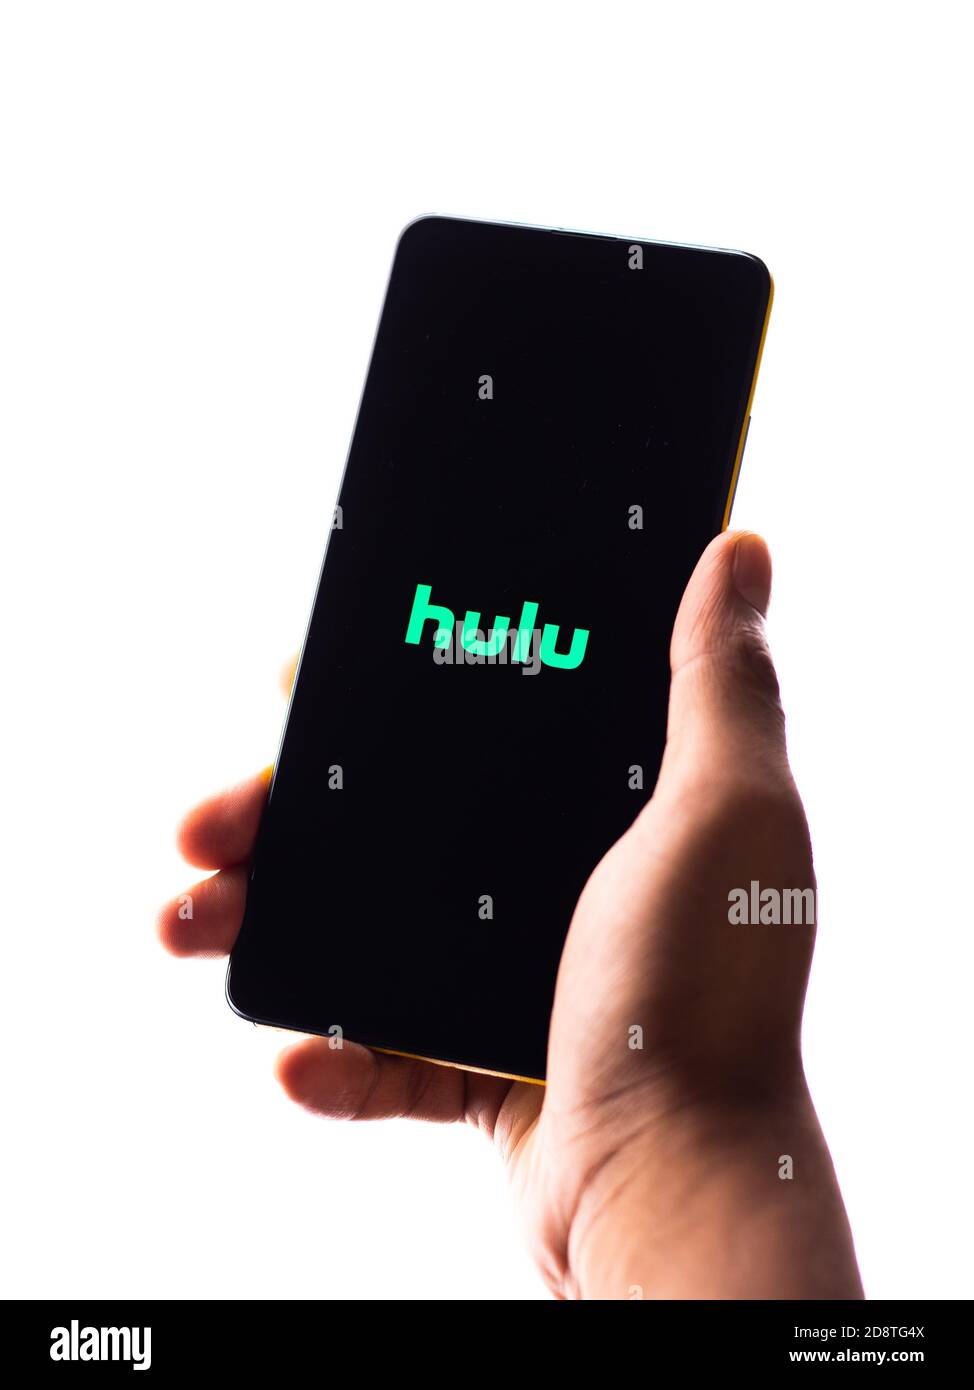 Assam, inde - 29 octobre 2020 : logo Hulu sur l'écran du téléphone. Banque D'Images